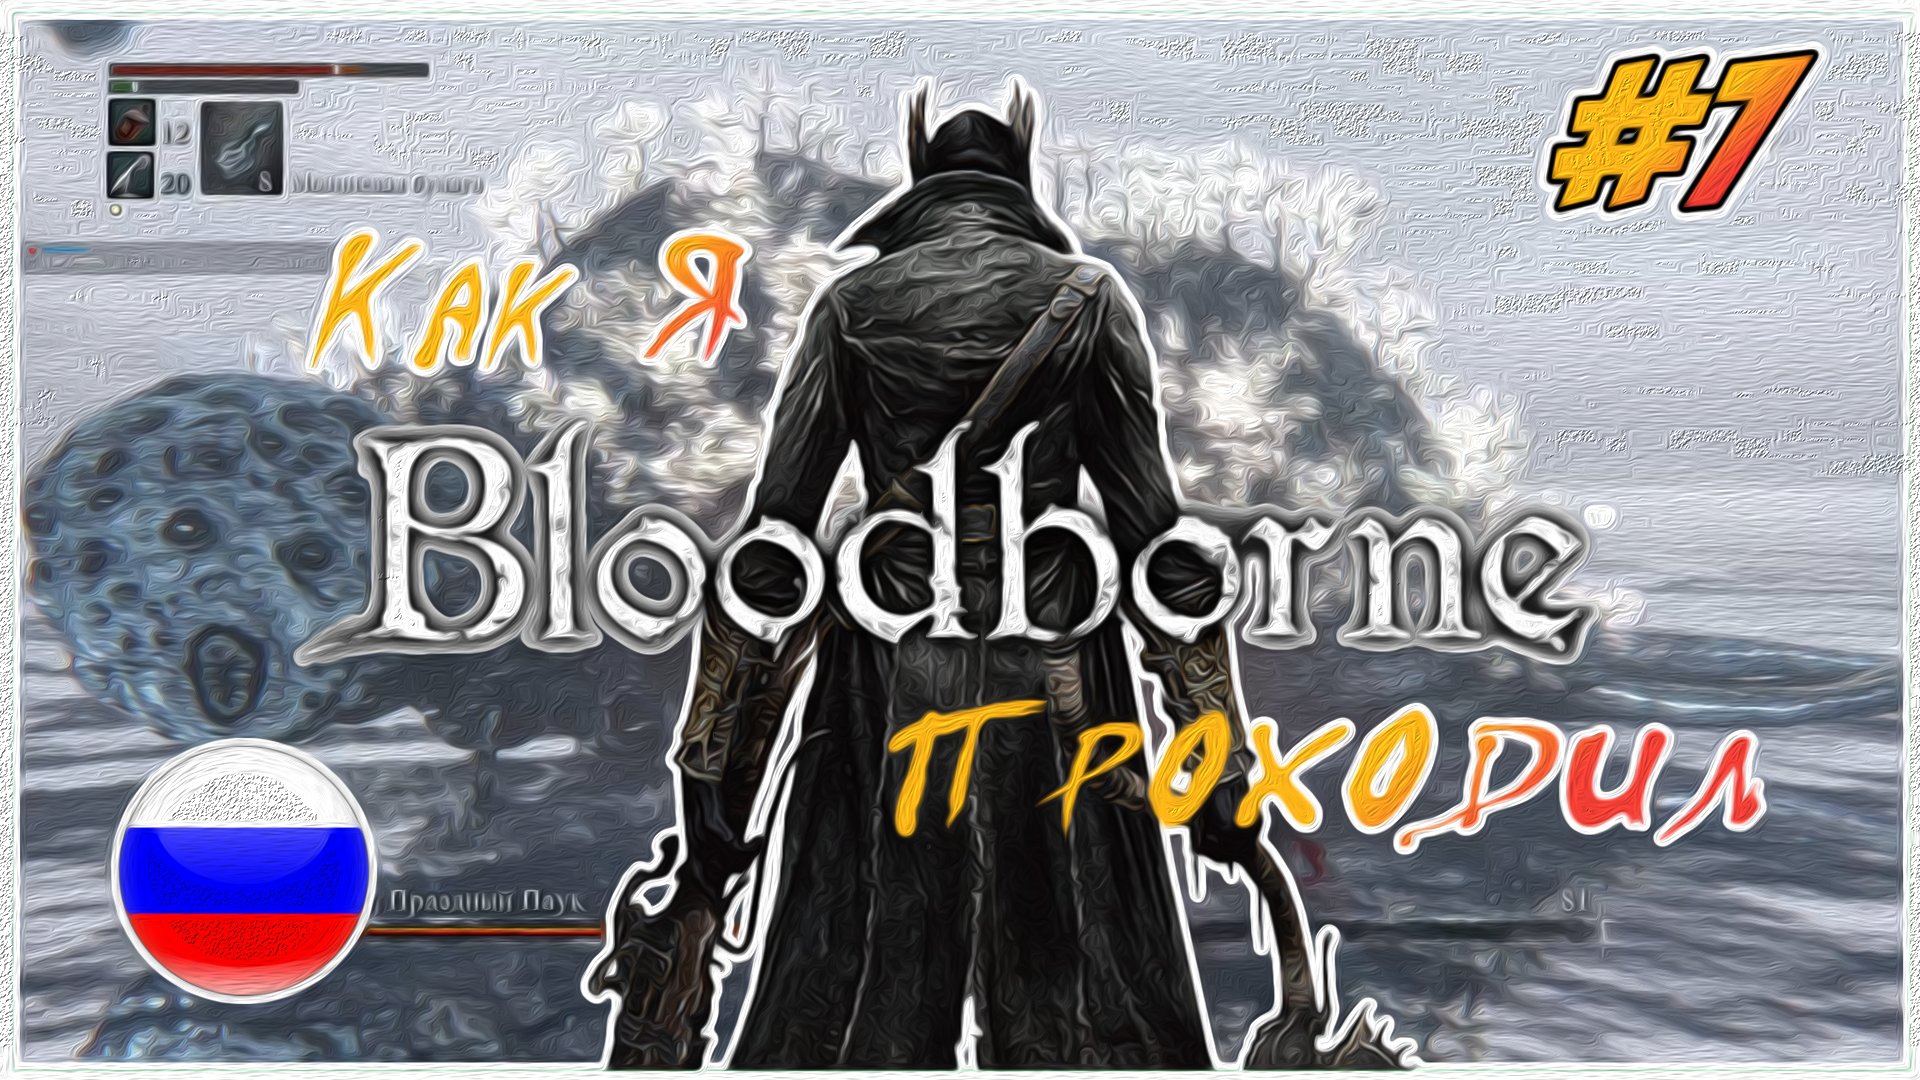 Как я Bloodborne проходил | PS4 #7